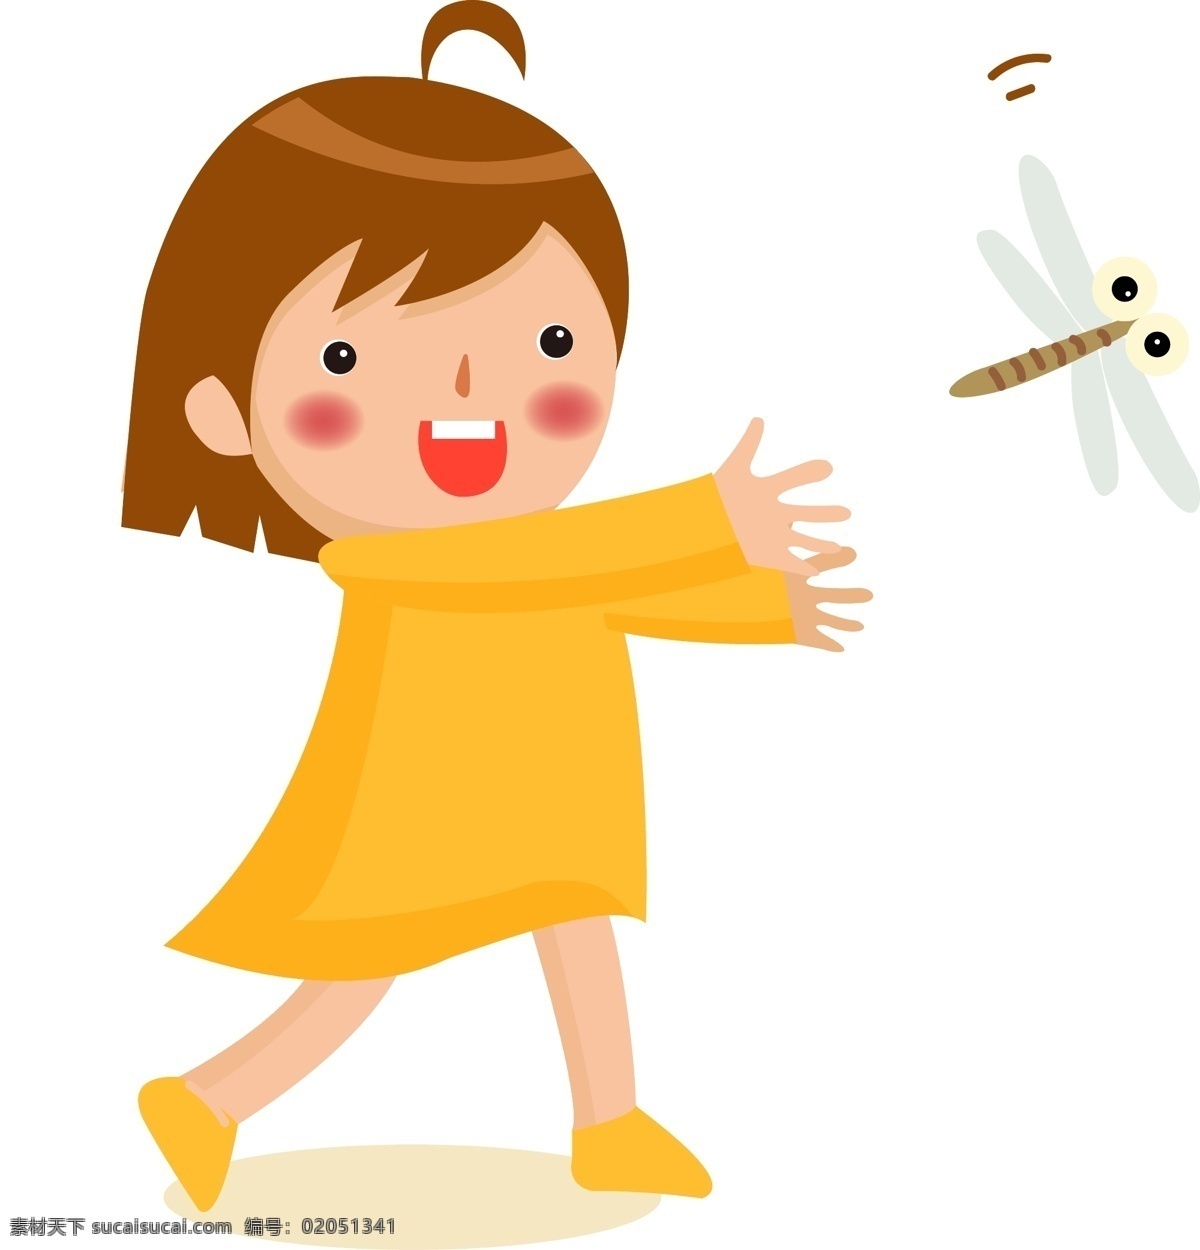 六一儿童节 捕捉 蜻蜓 女孩 回忆 童年 游戏 玩耍 卡通 矢量 手绘 插画 开心 快乐